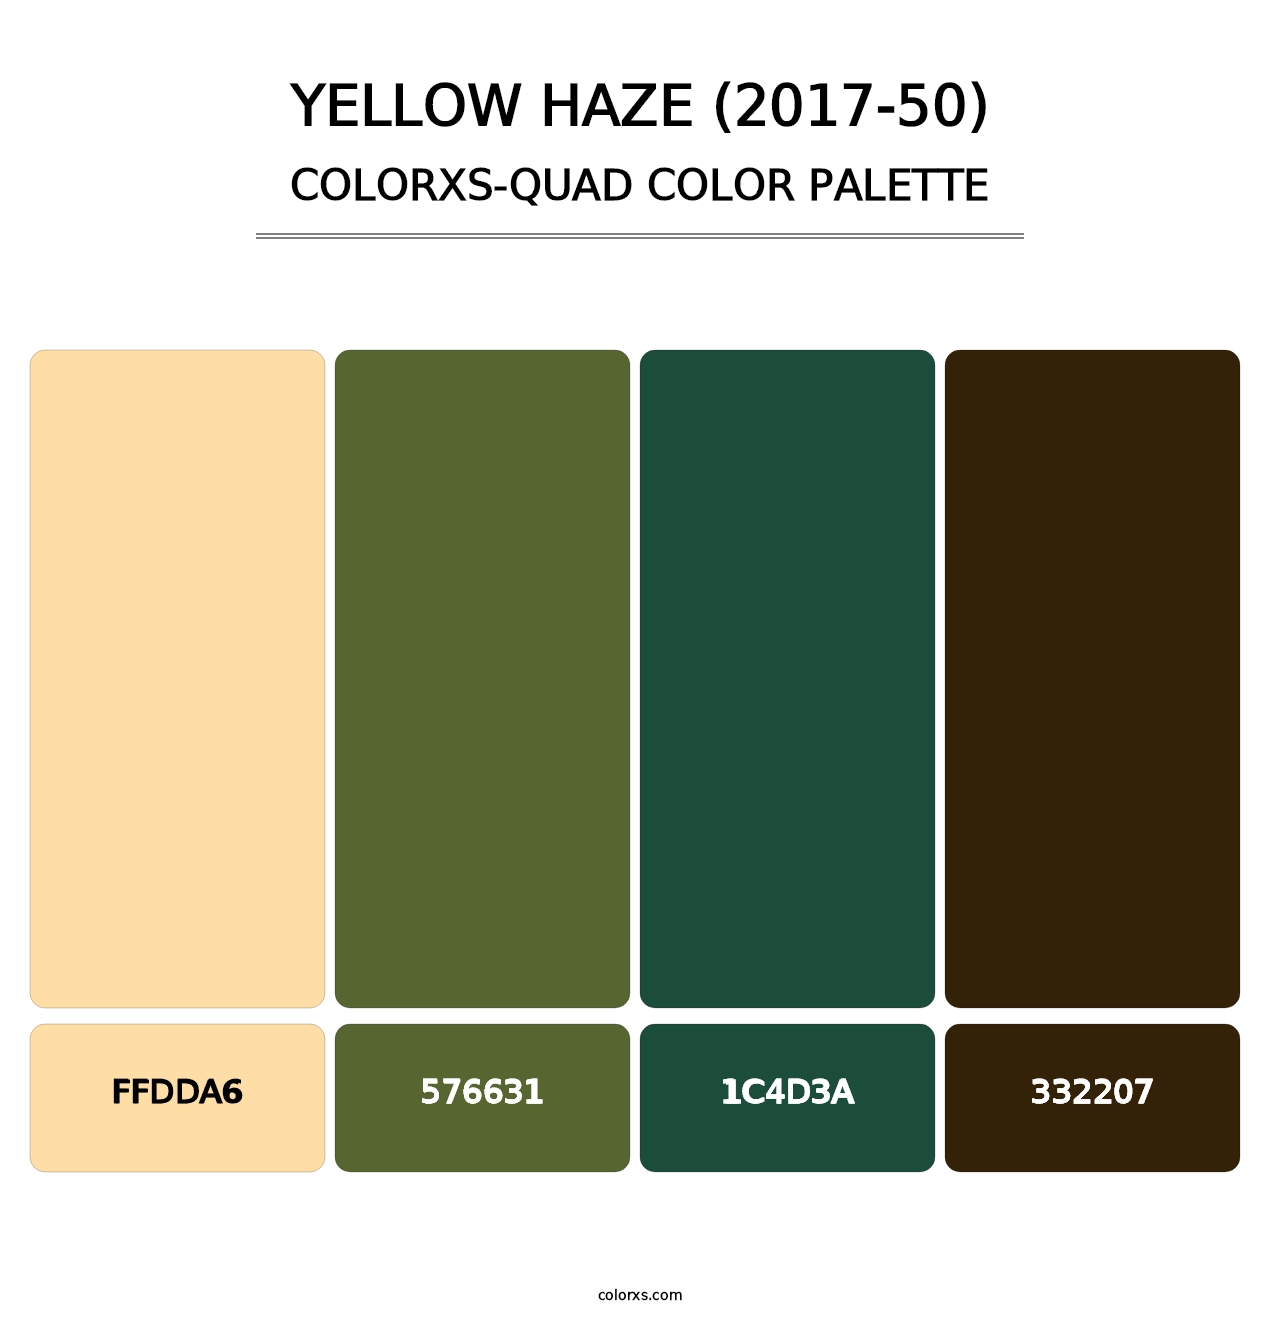 Yellow Haze (2017-50) - Colorxs Quad Palette